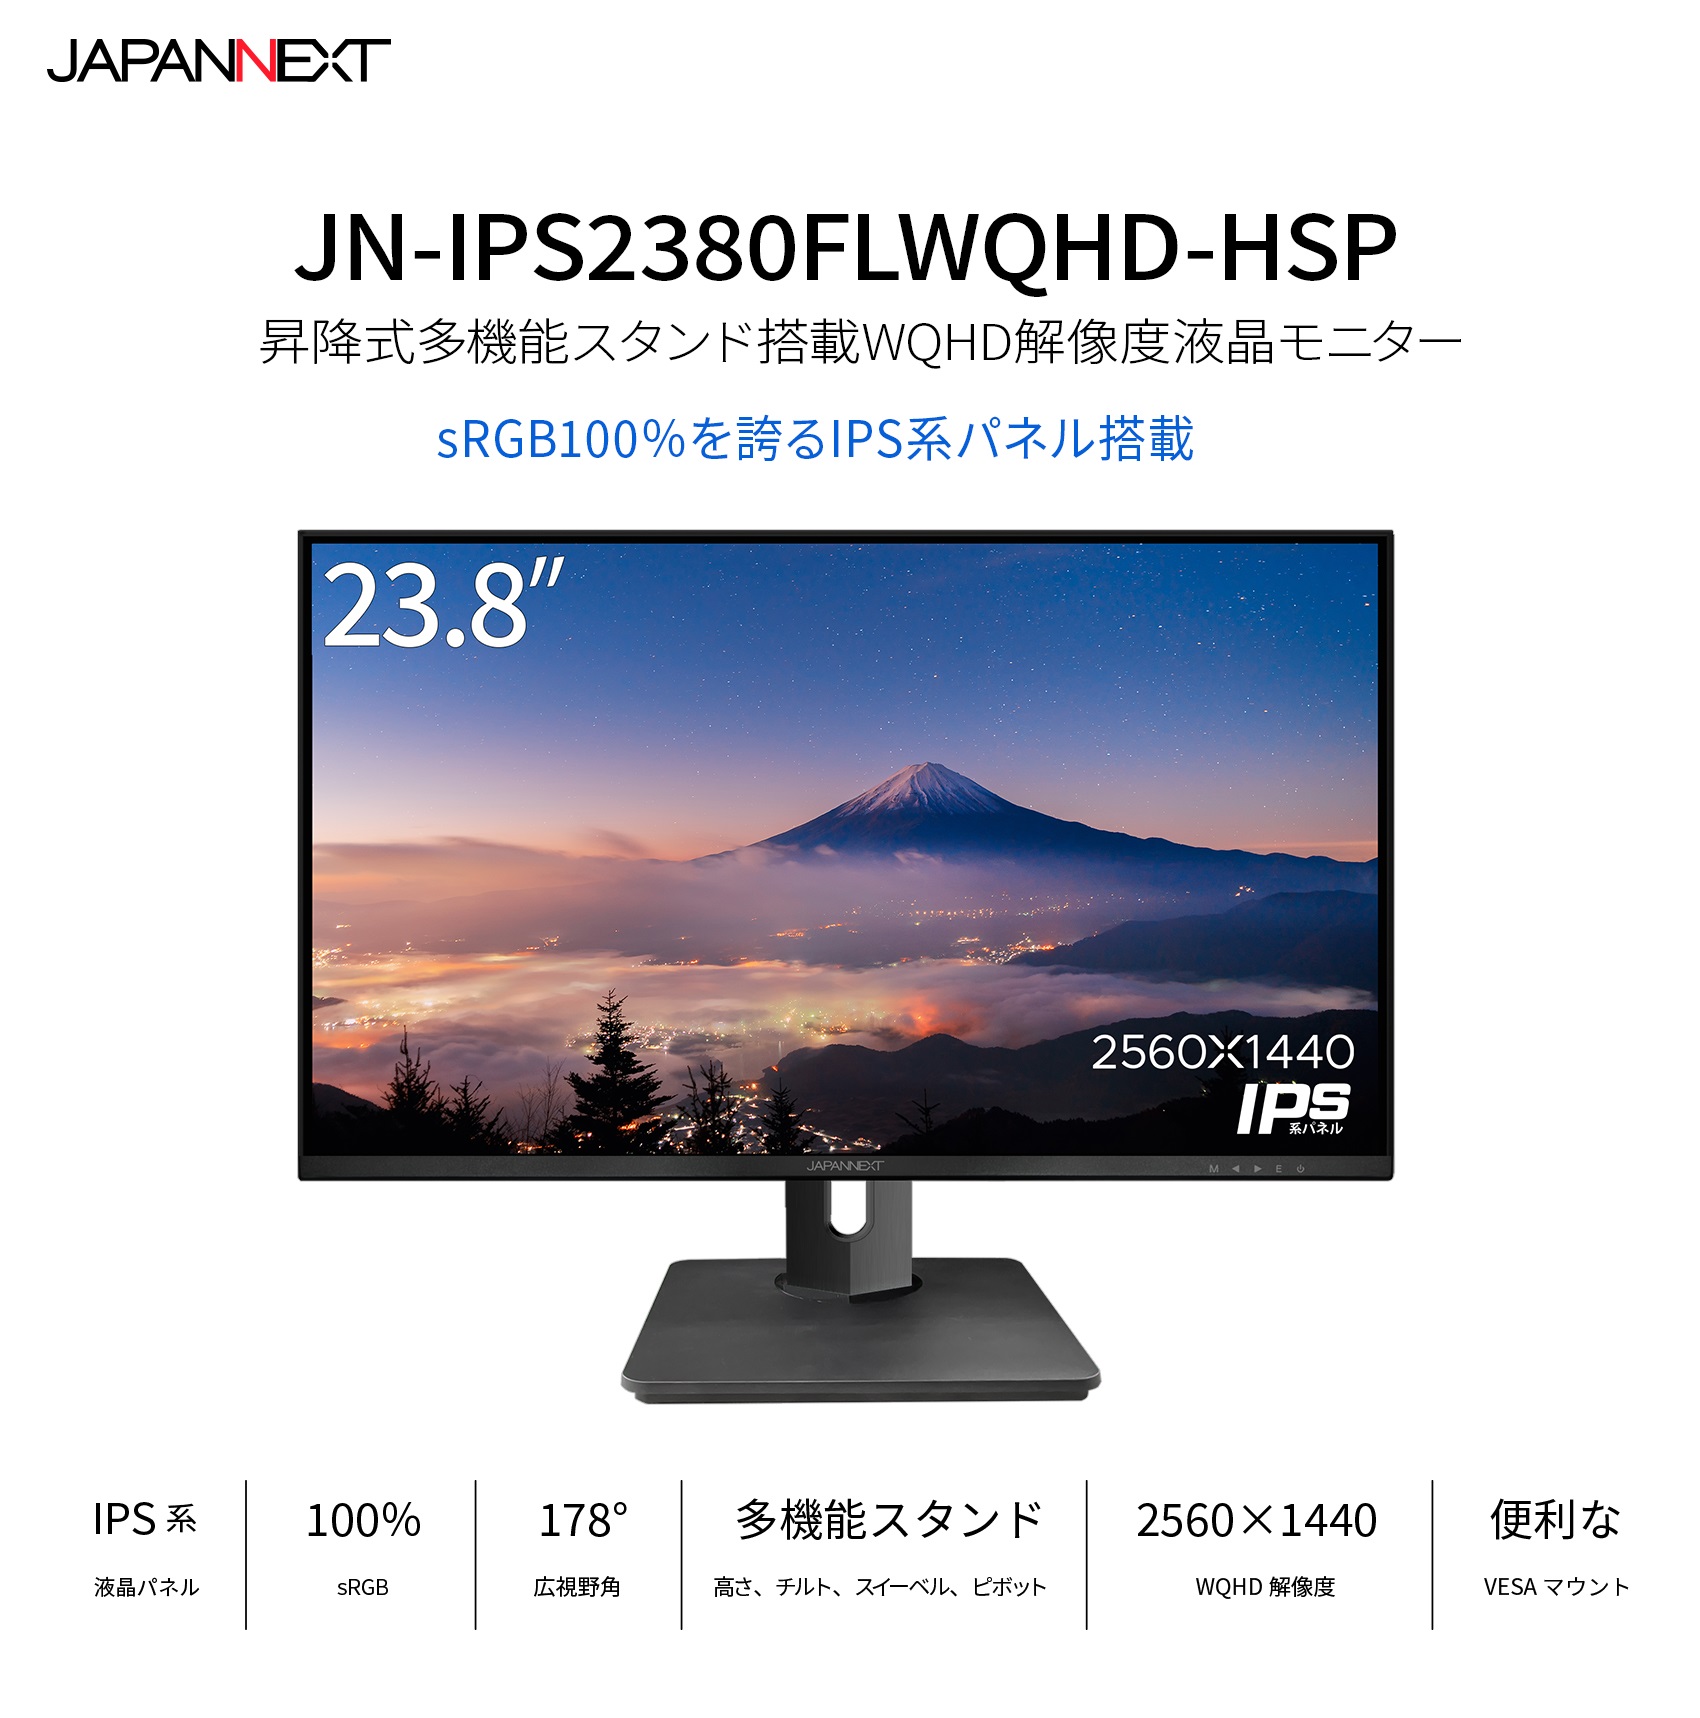 23.8インチ IPS WQHD(2560 x 1440) 解像度対応液晶ディスプレイ JN 